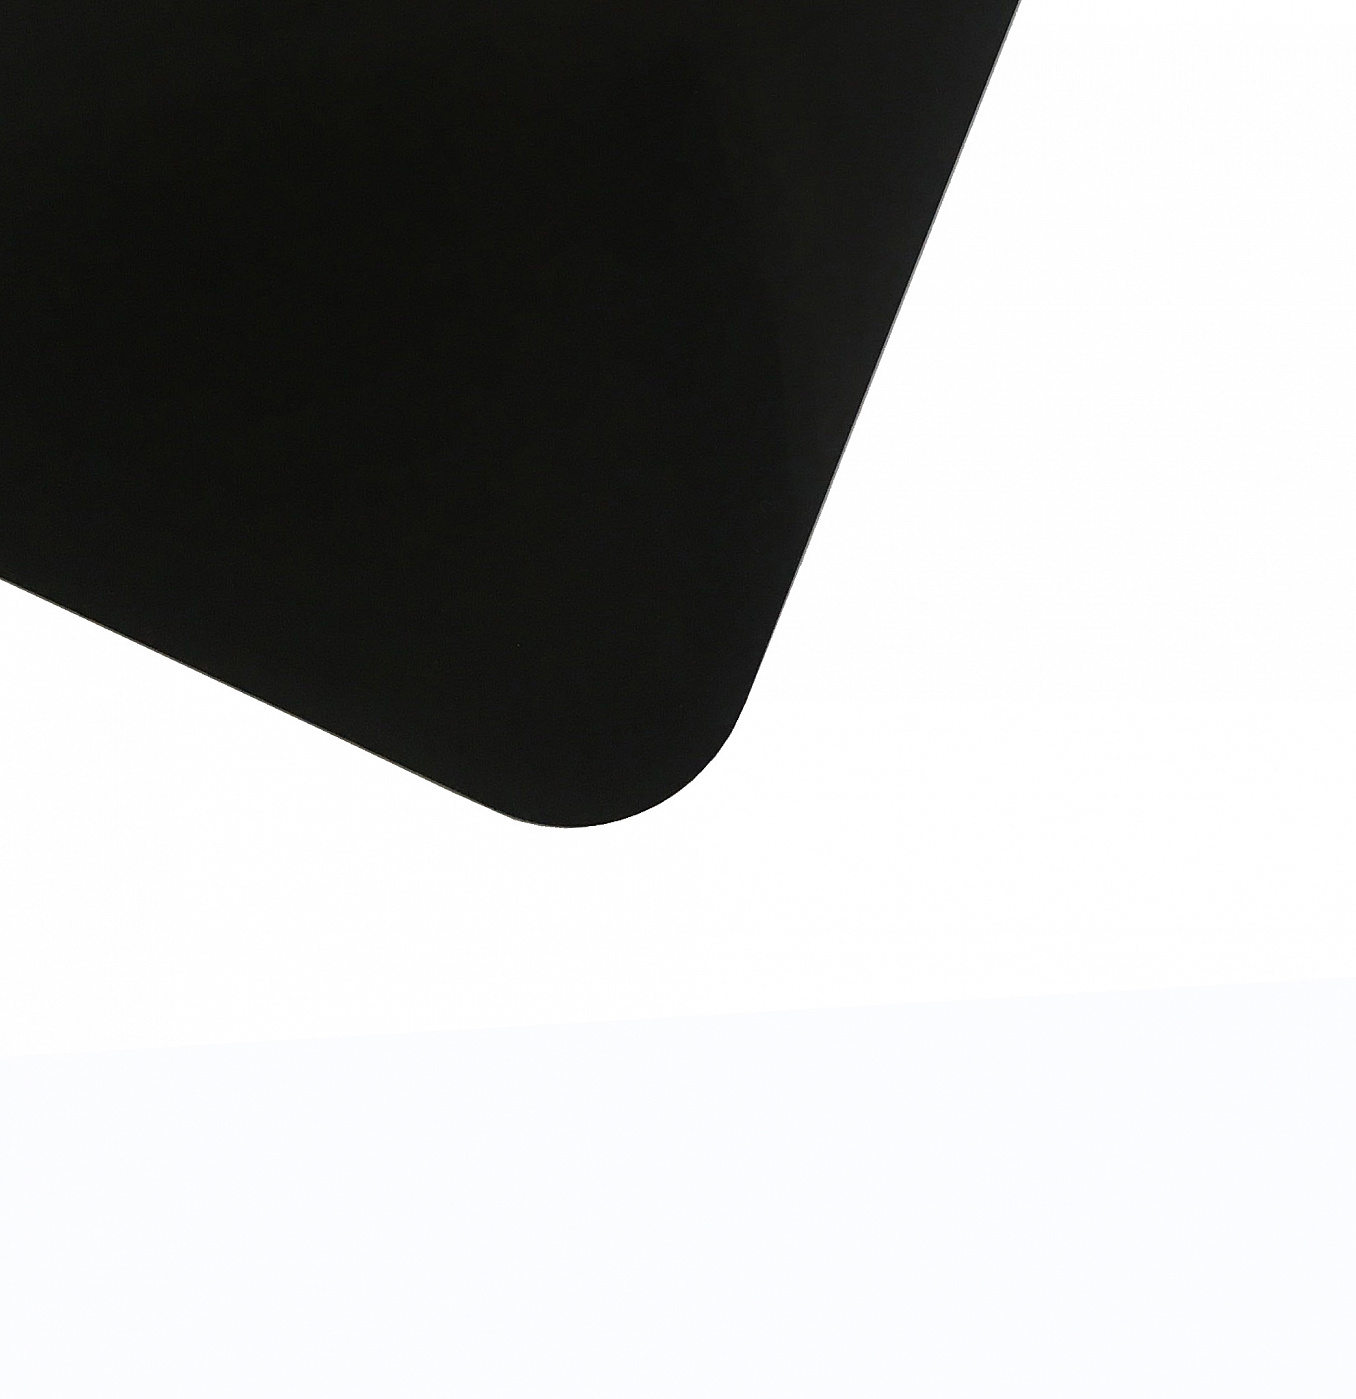 Планшет для пленэра из оргстекла 3 мм, под лист размера А5, цвет черный Dec-9082009 - фото 1